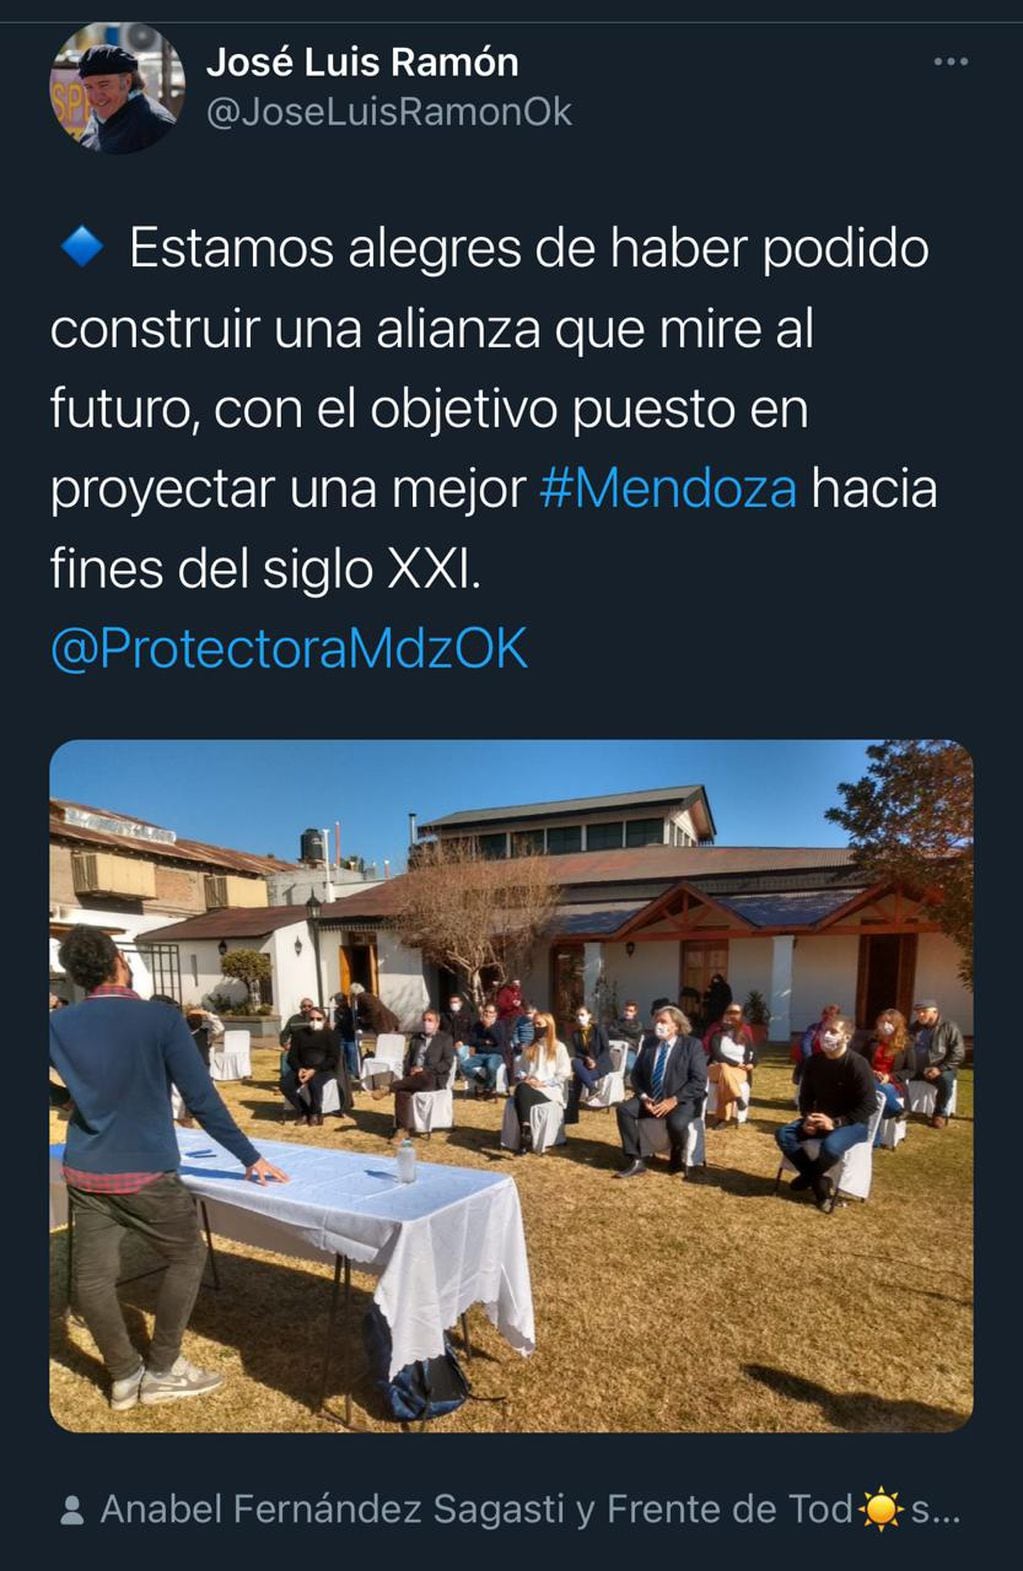 El tweet de José Luis Ramón. 